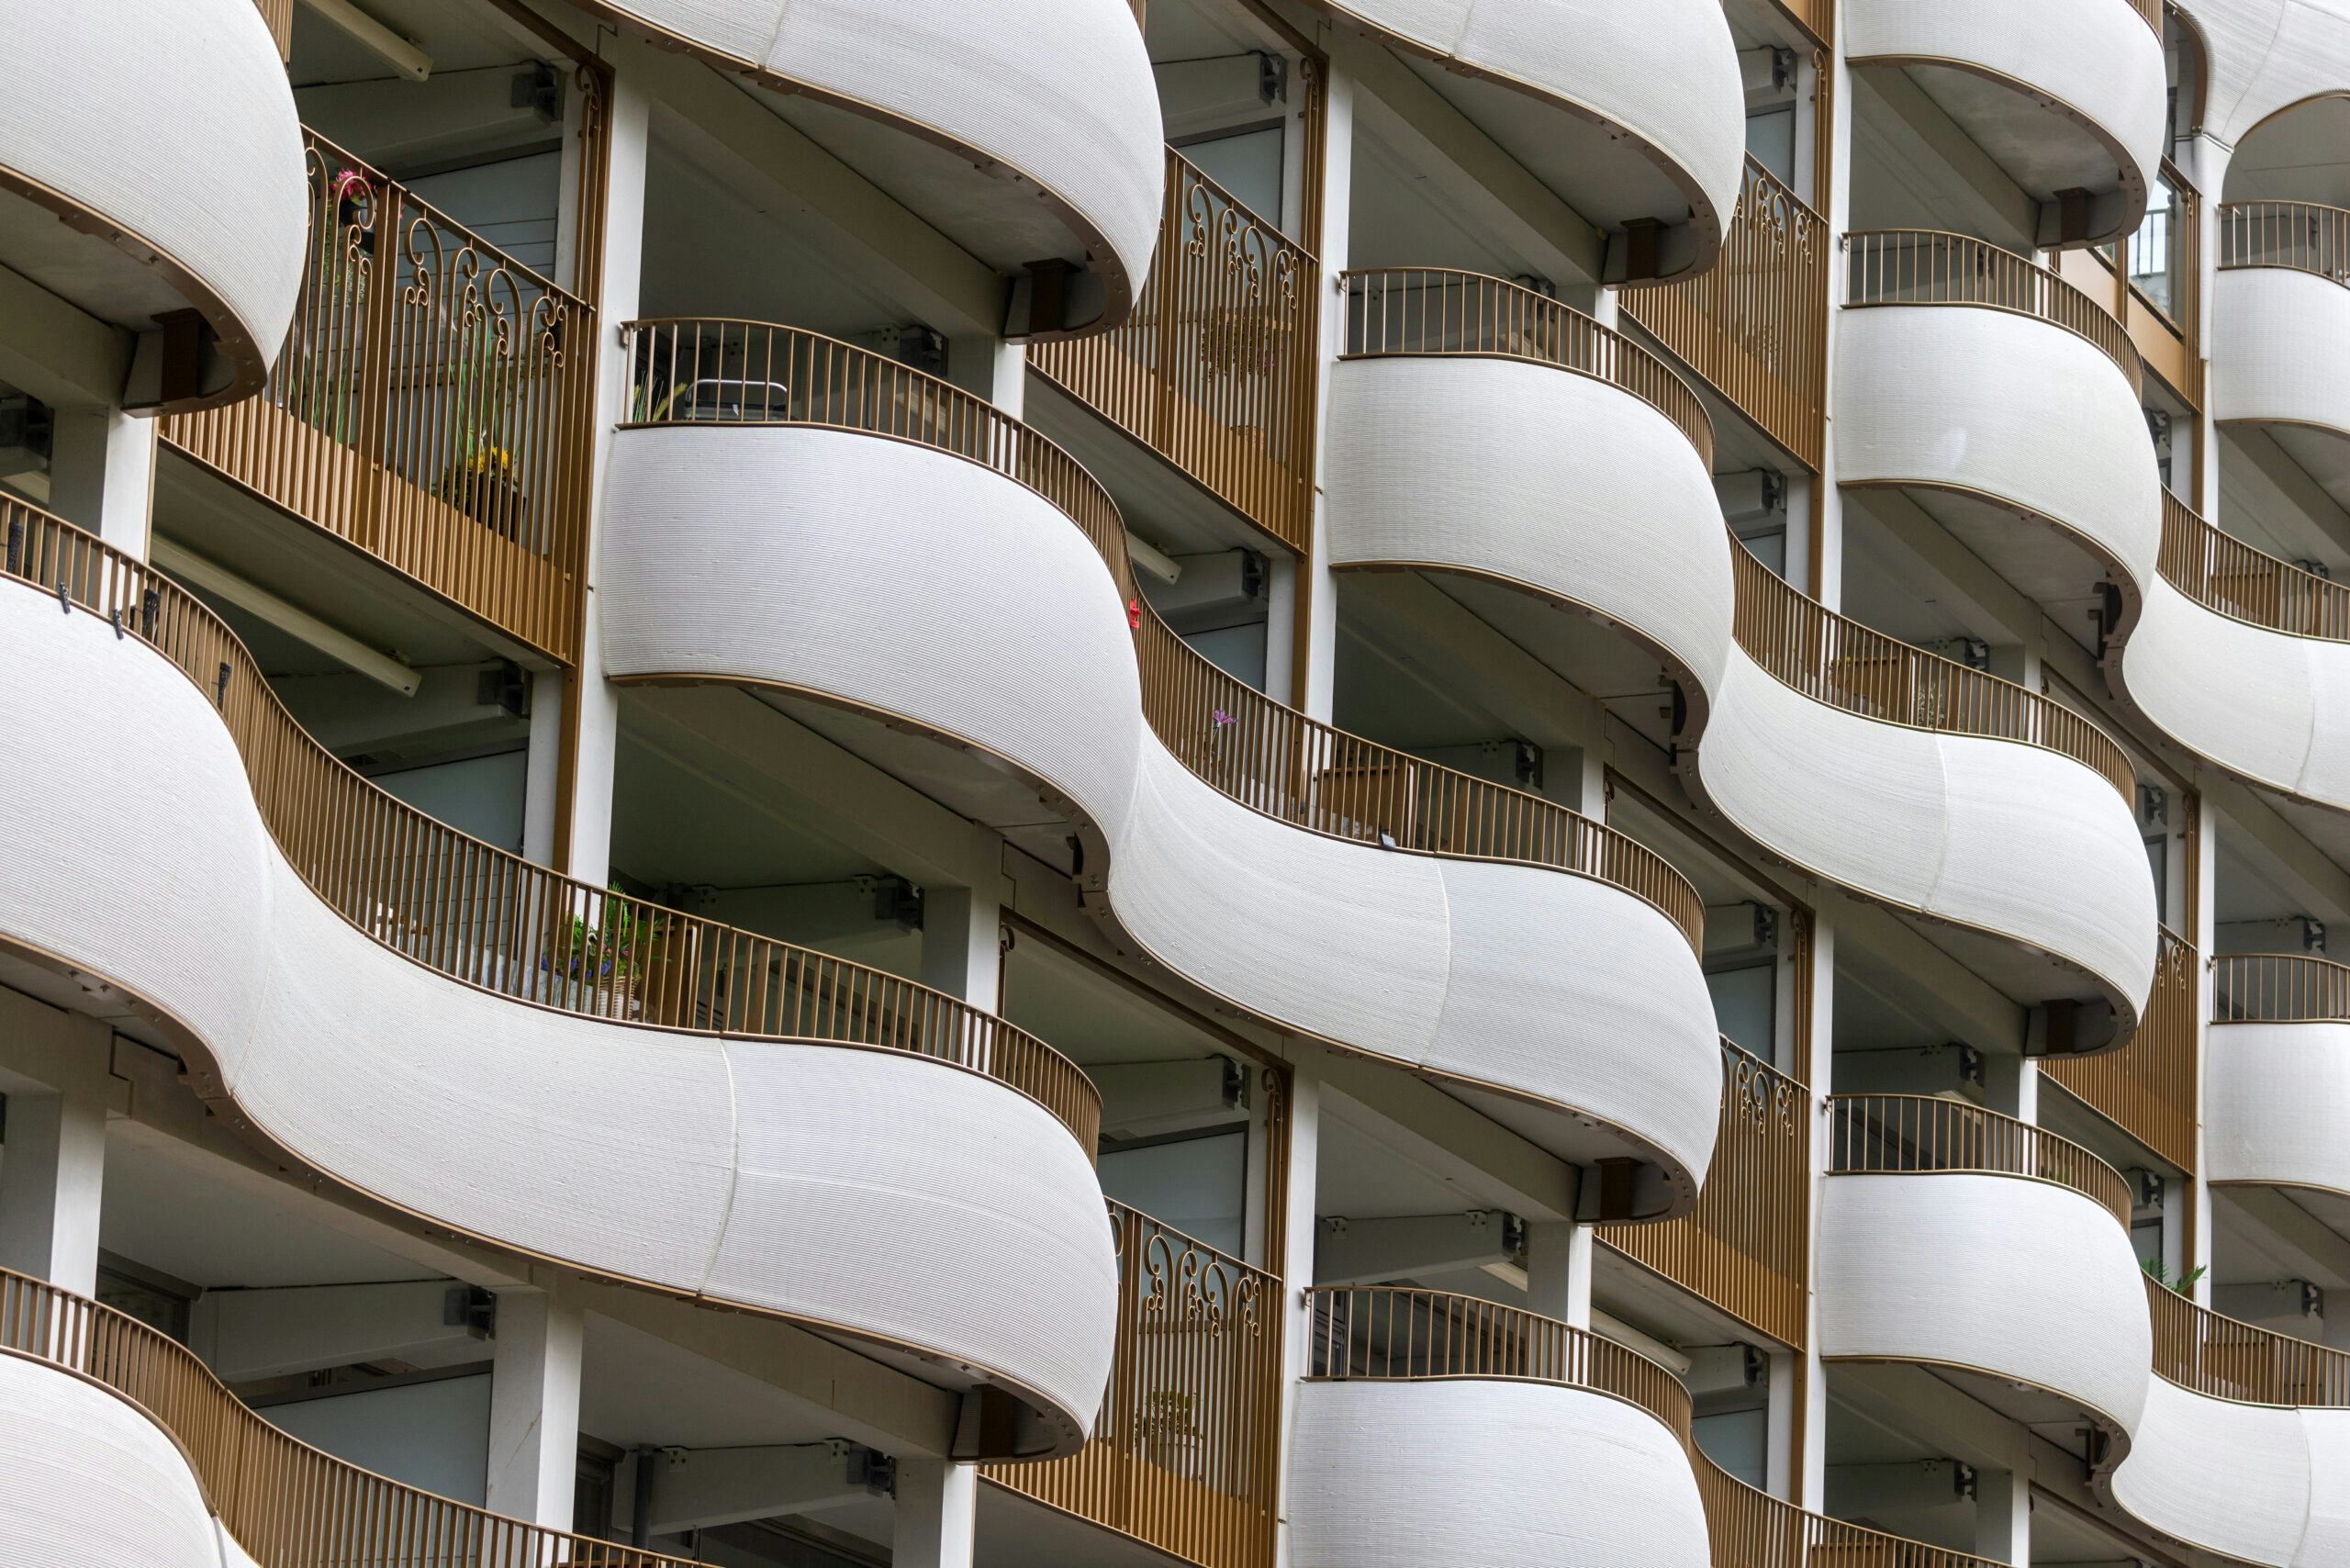 De nieuwe balkons van de flats aan de Baskeweg in Den Helder golven en krullen alle kanten op. Foto: Niels de Vries. 